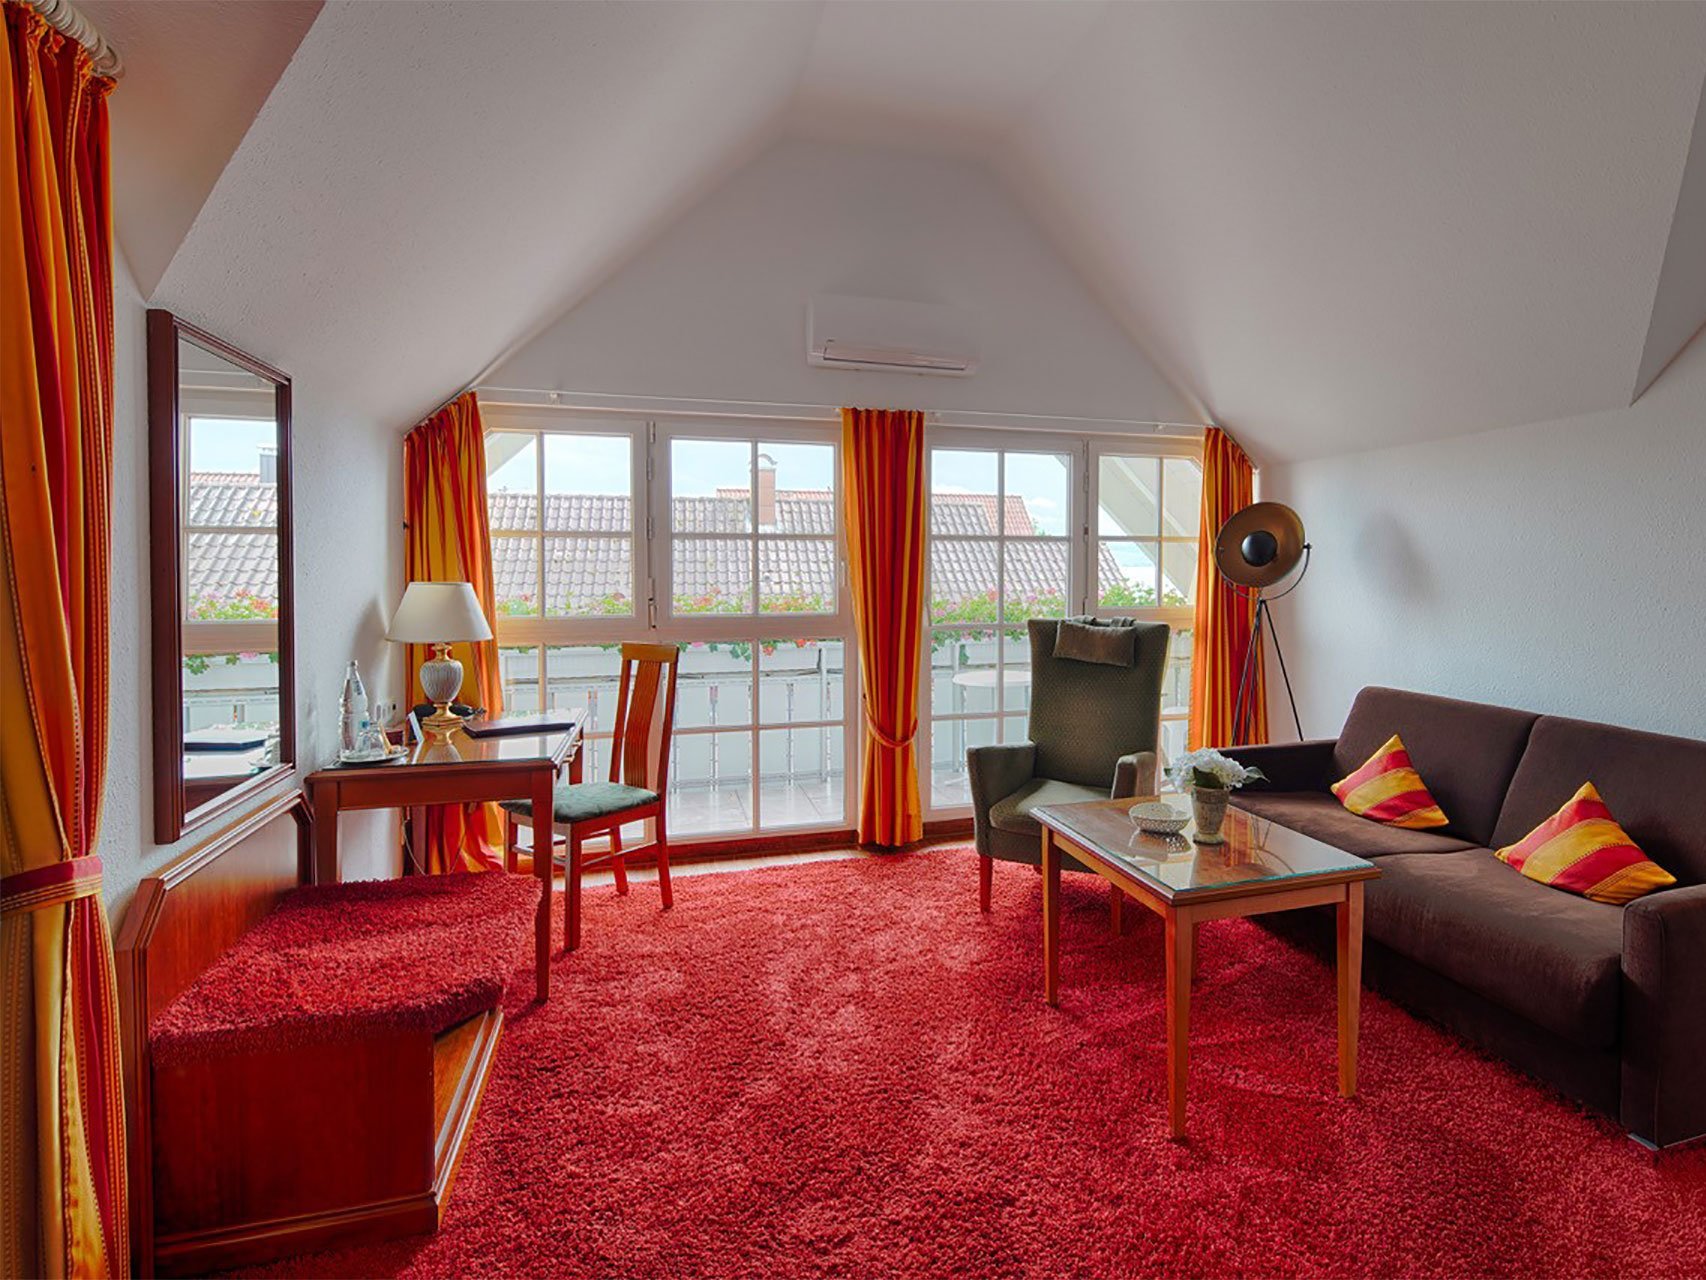 Junior-Suite mit seitlichem Seeblick des Hotels Seeperle am Bodensee.